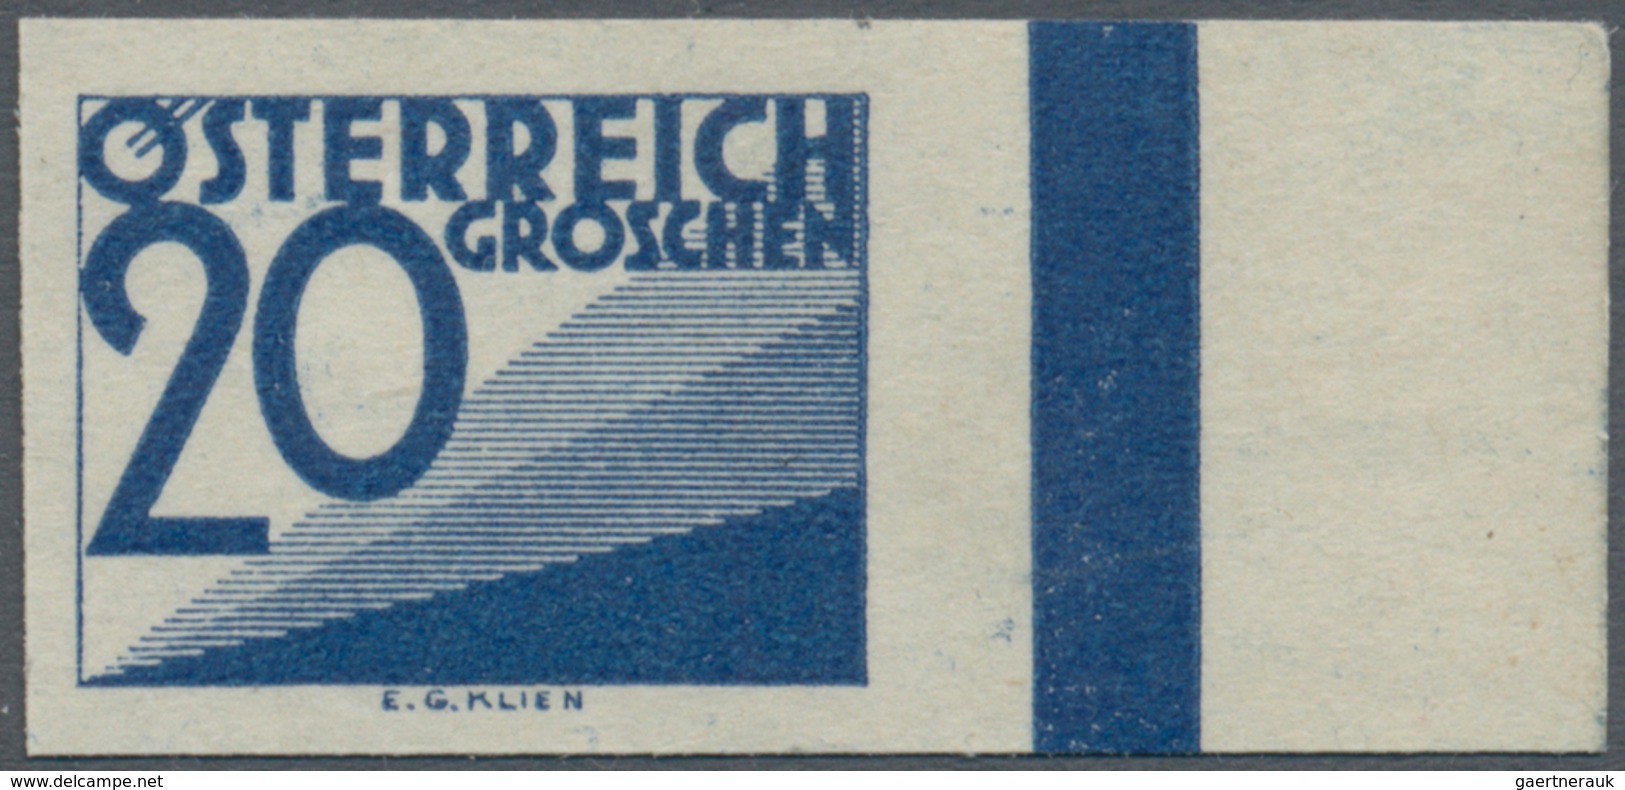 Österreich - Portomarken: 1925, Ziffern 1 Gr. bis 10 Sch. UNGEZÄHNT, alle 22 bekannten Werte komplet